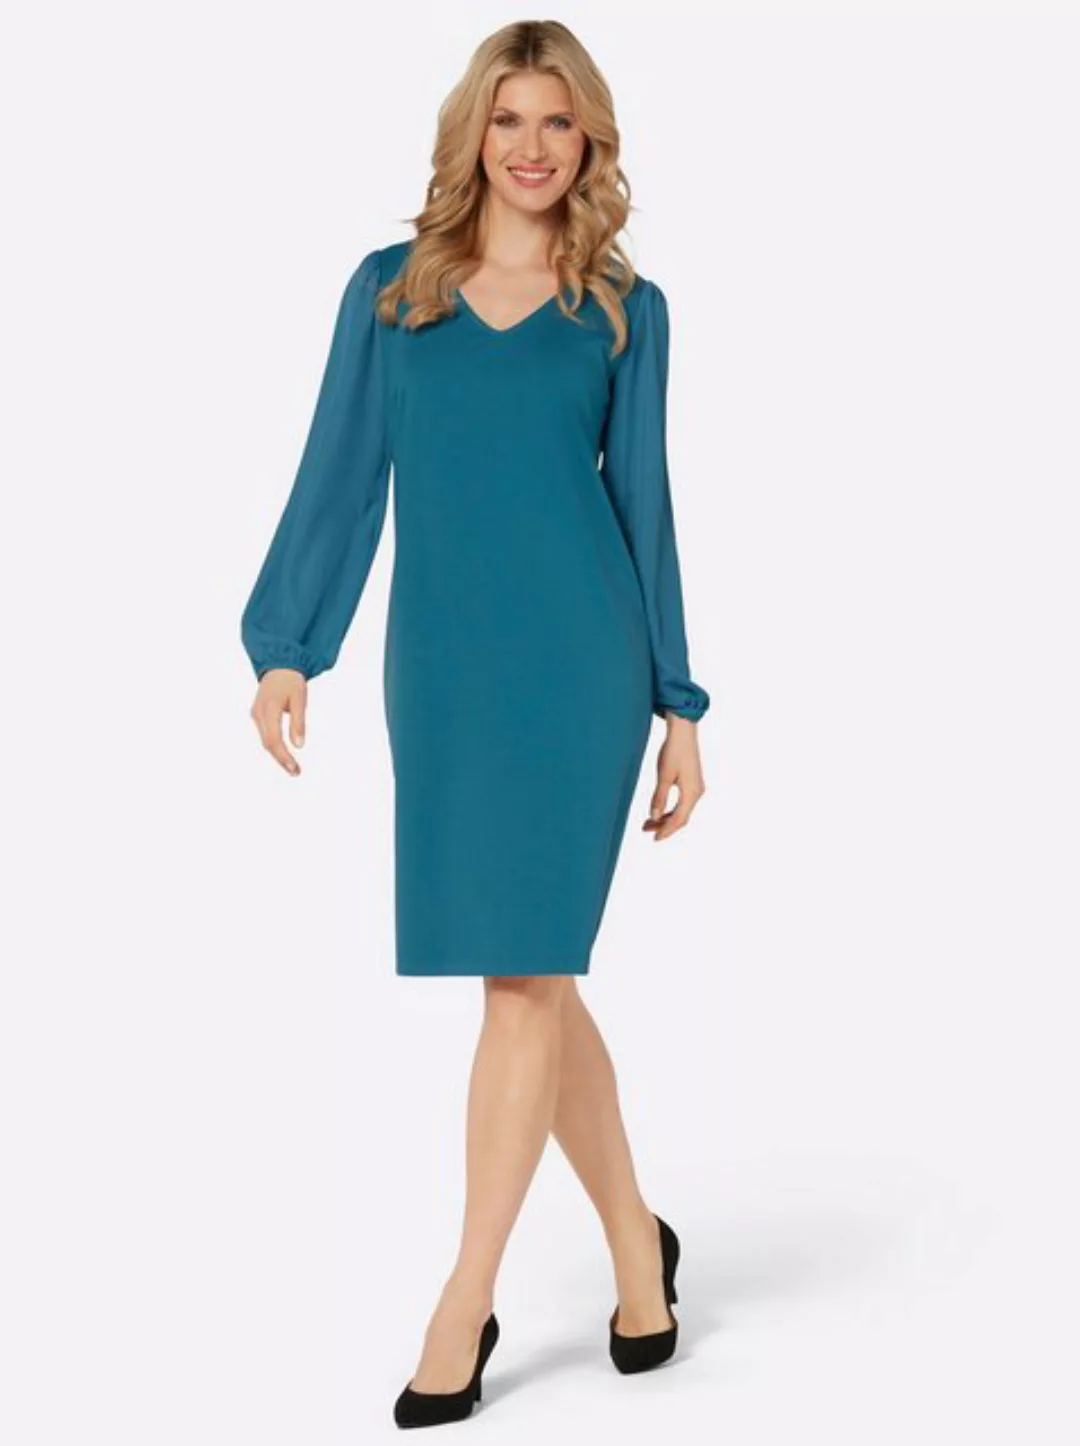 Sieh an! Etuikleid Jersey-Kleid günstig online kaufen